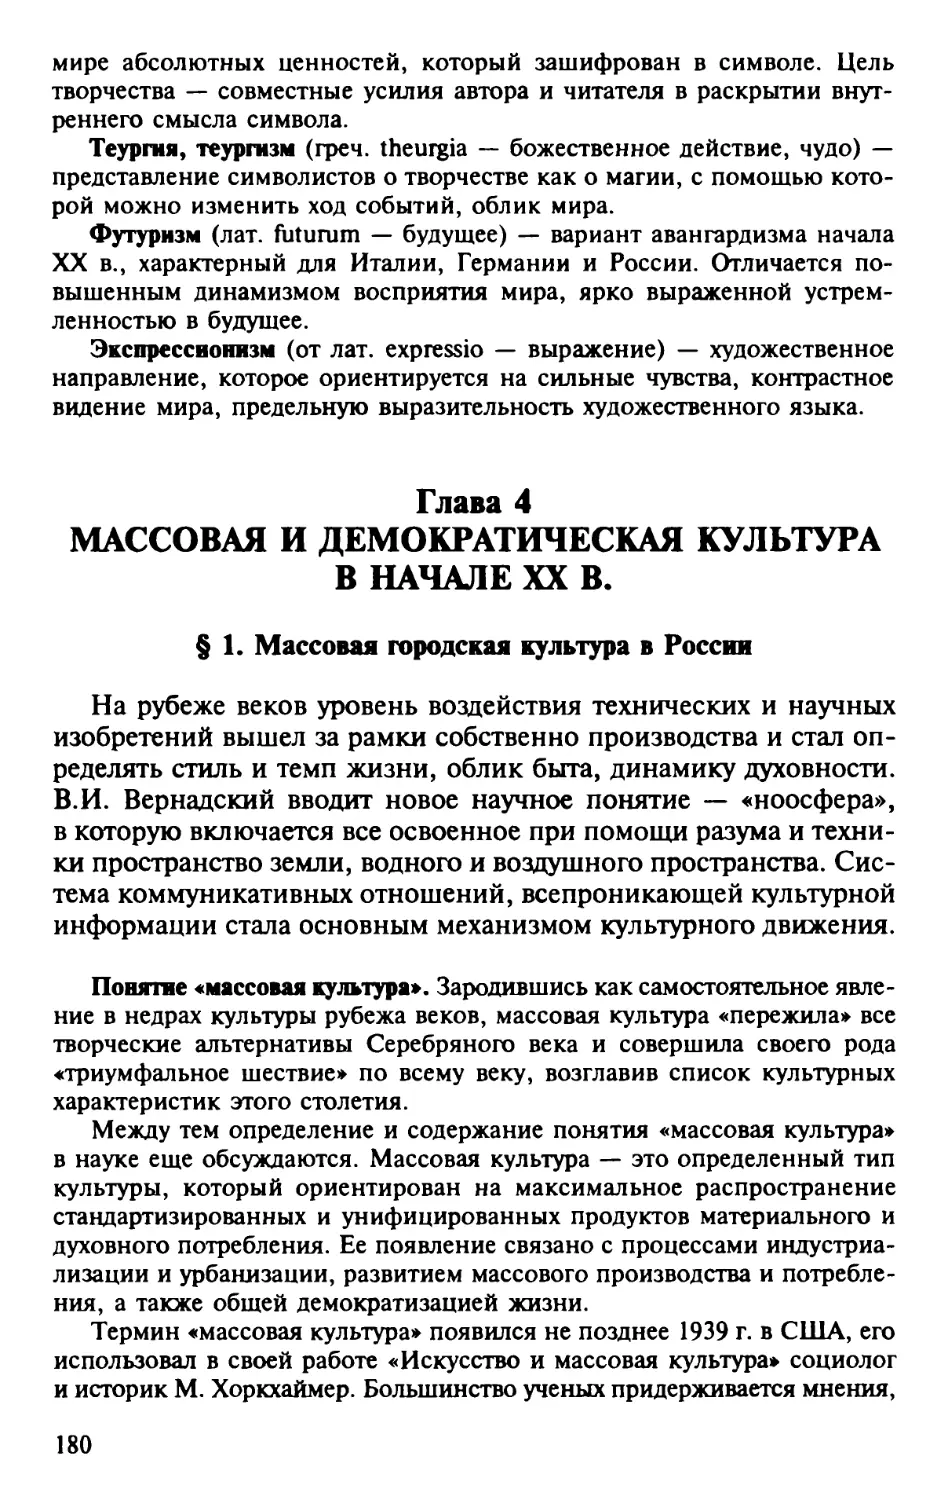 Глава 4. Массовая и демократическая культура в начале XX в.
§ 1. Массовая городская культура в России